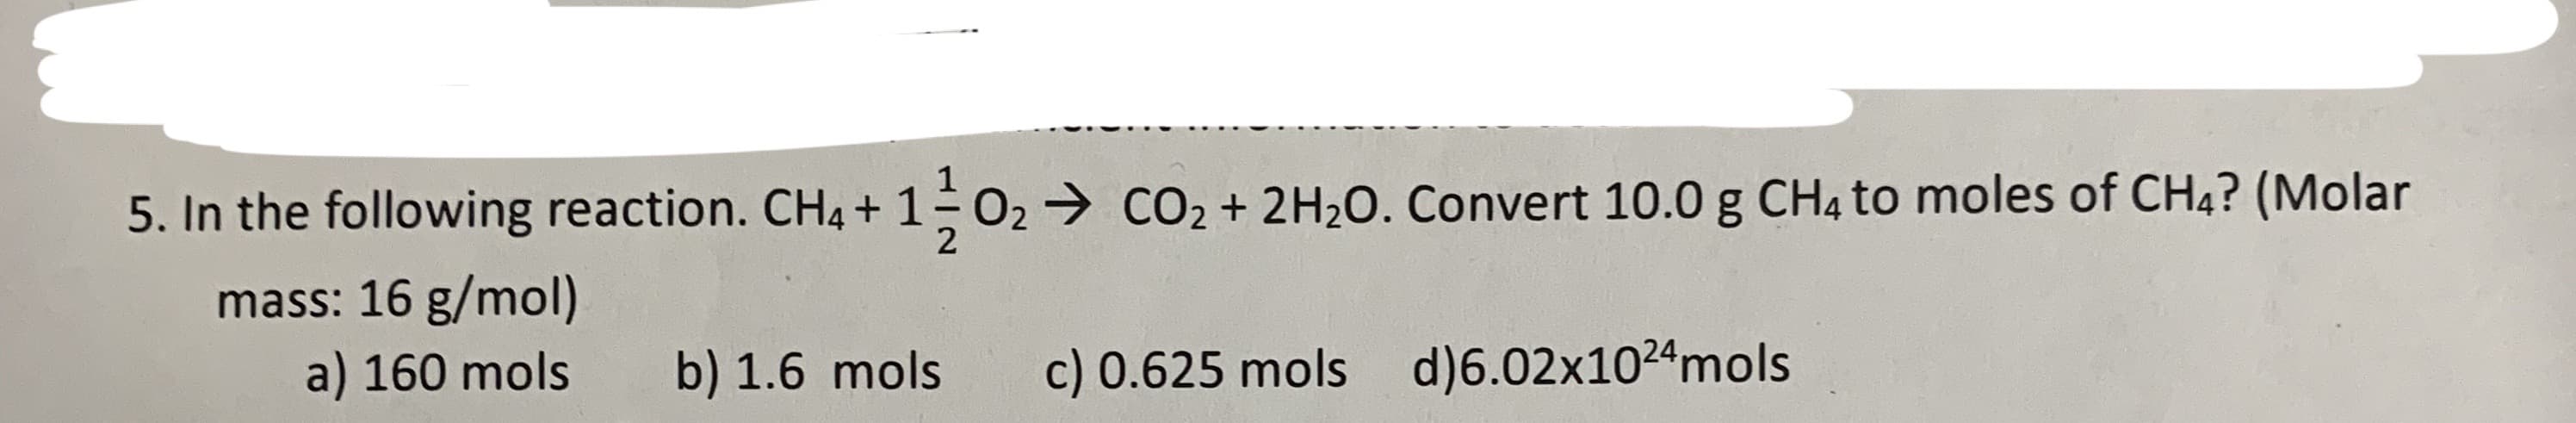 the following reaction. CH4 + 1 O2 CO2 +2 H2O. Convert 10.0 g CH4 t
mass: 16 g/mol)
a) 160 mols
d)6.02x1024m ols
c) 0.625 mols
b) 1.6 mols
